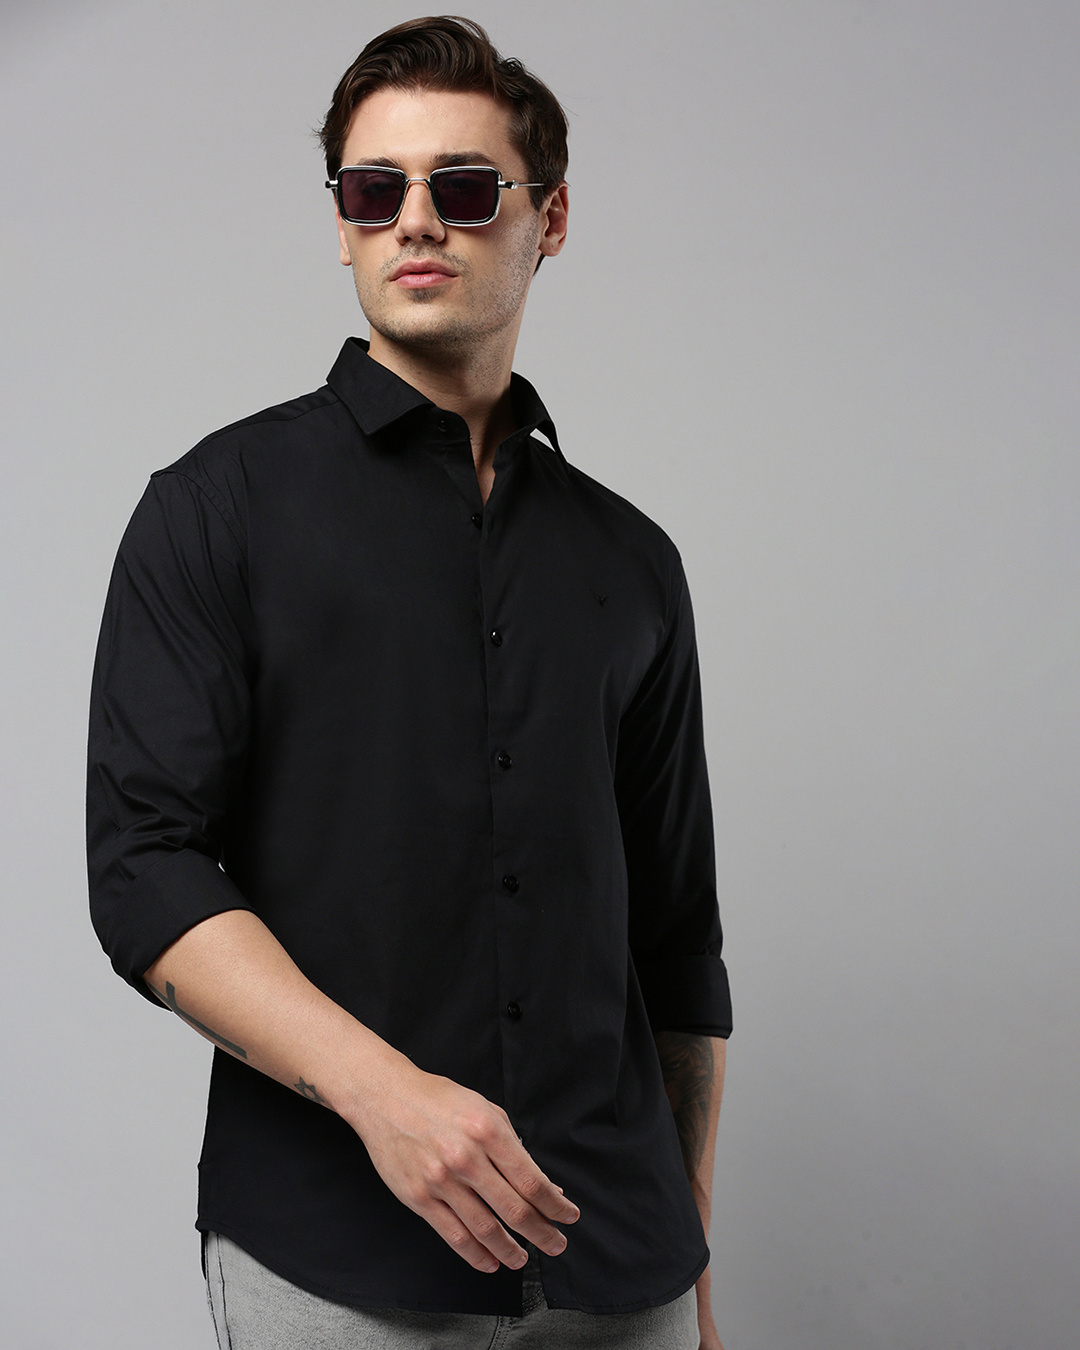 Buy Men's Black Slim Fit Shirt Online at Bewakoof